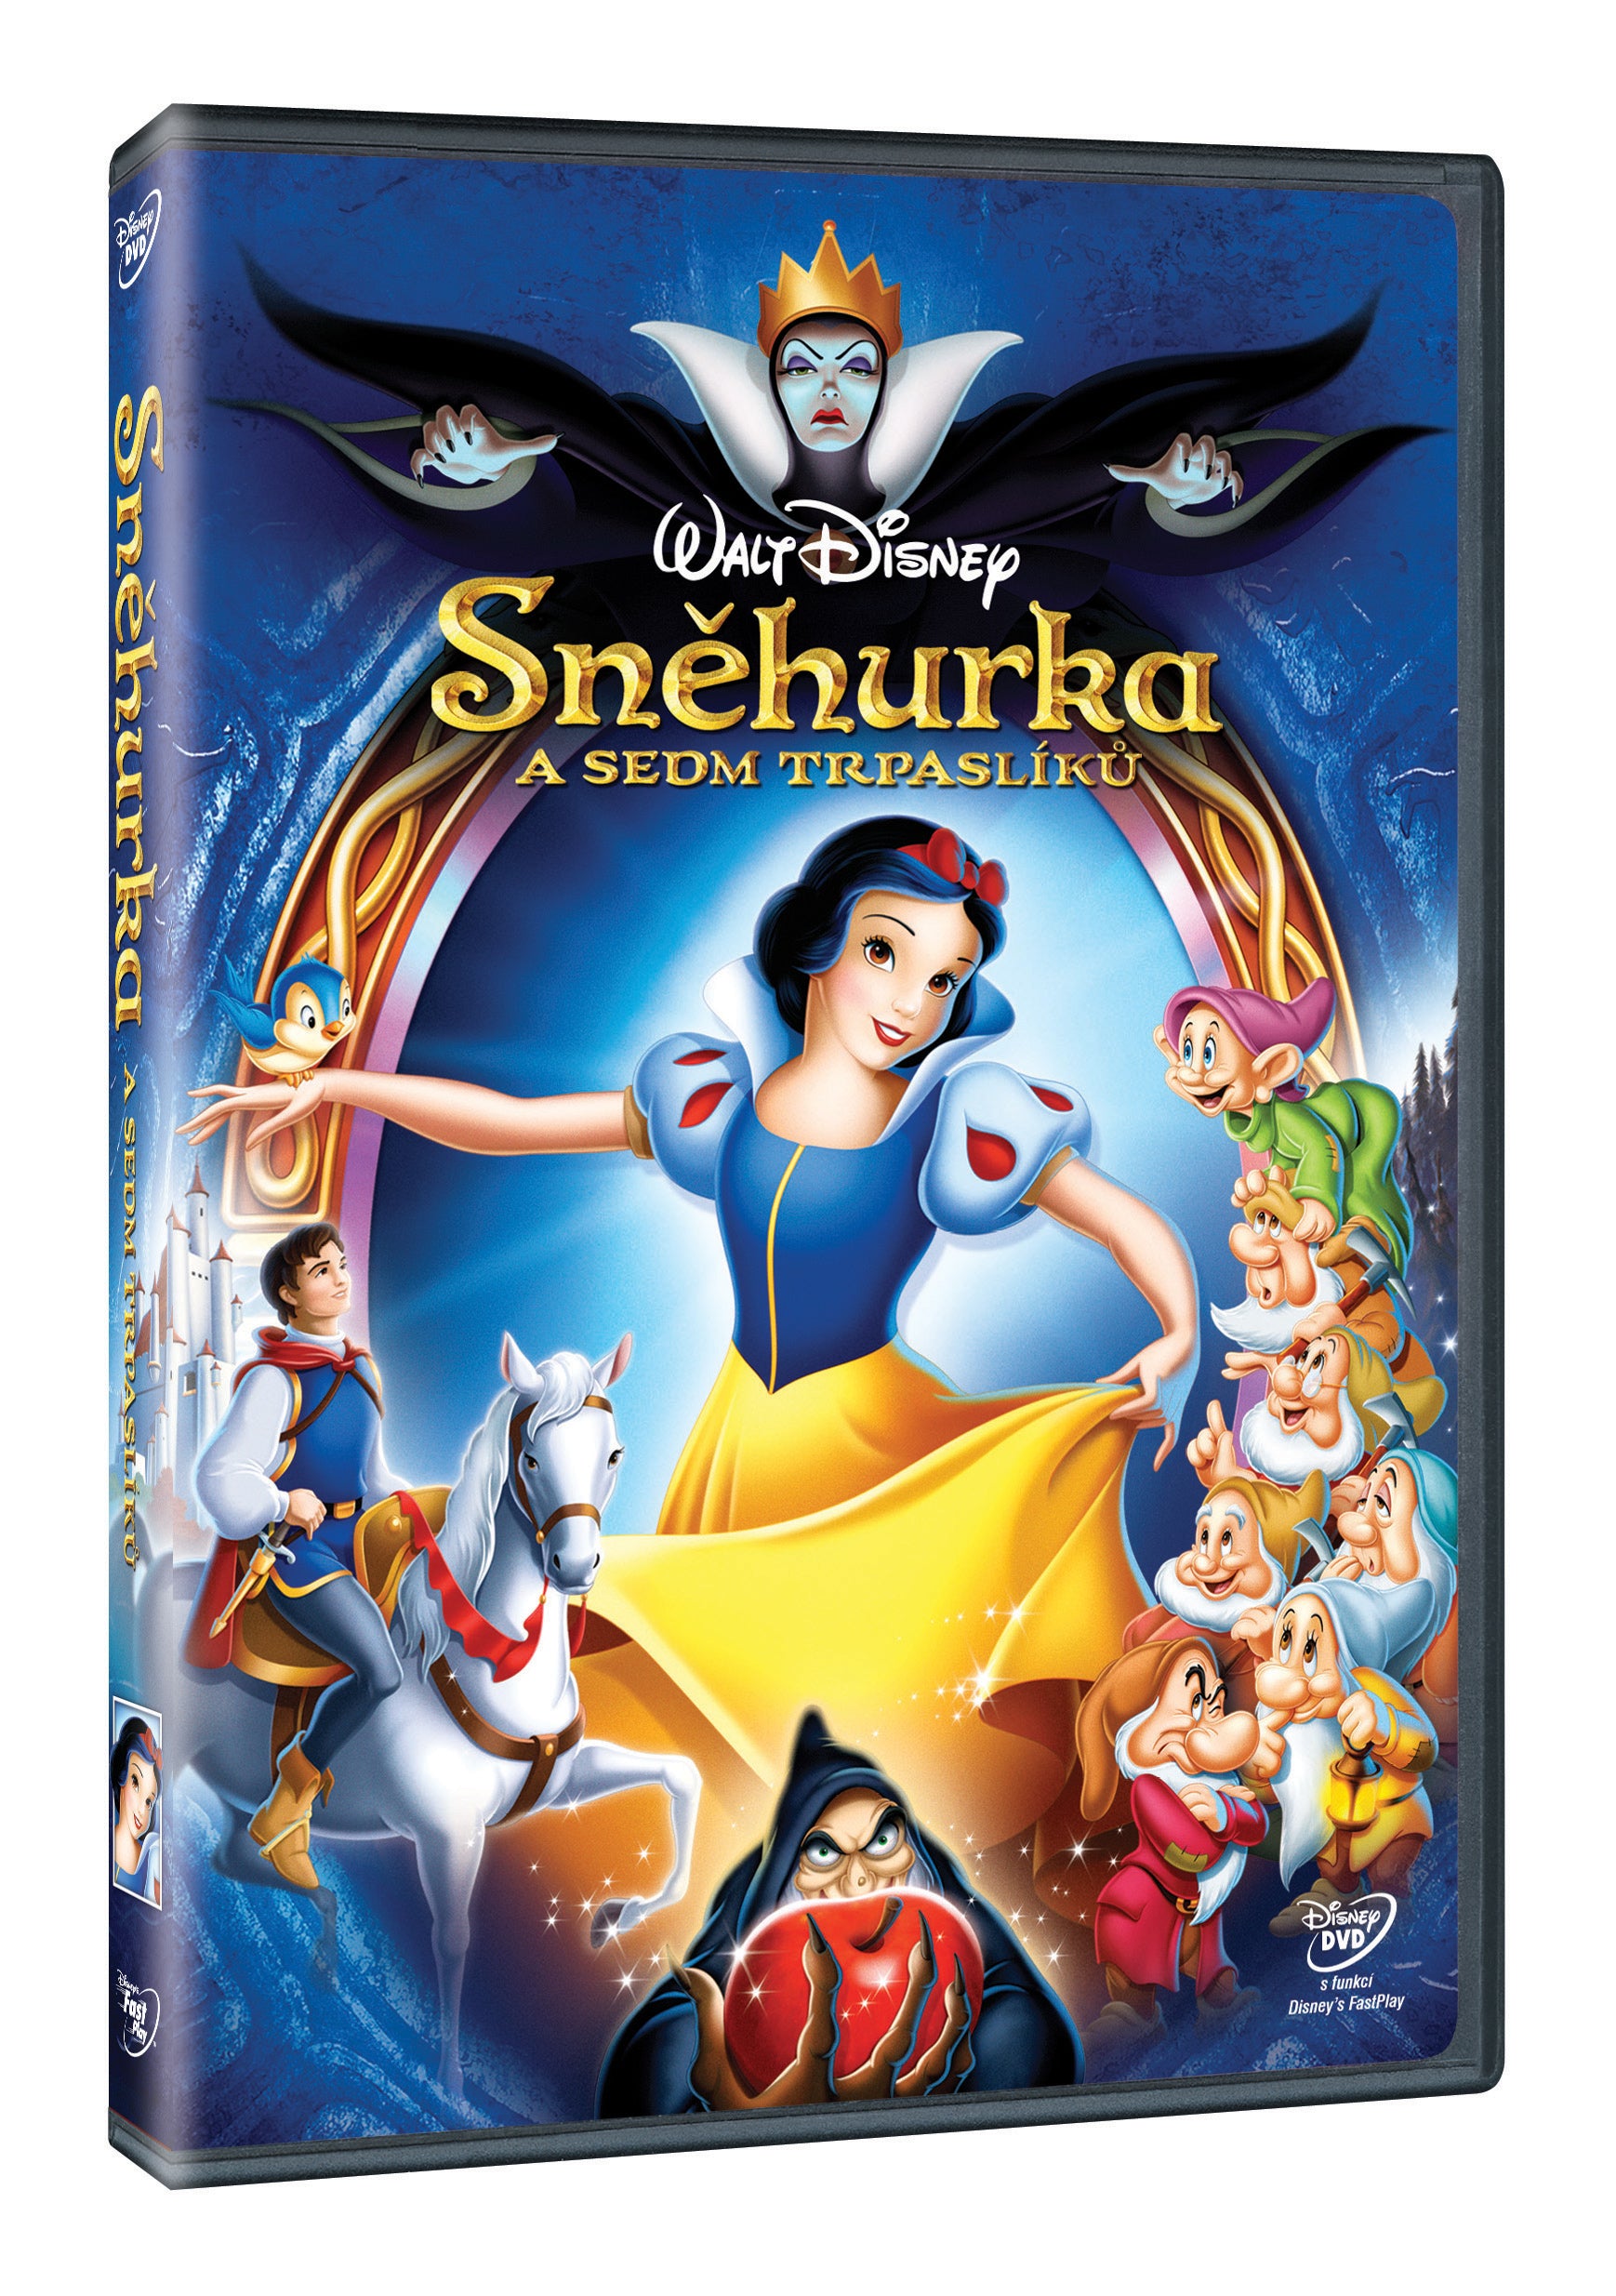 Snehurka a sedm trpasliku DVD / Schneewittchen